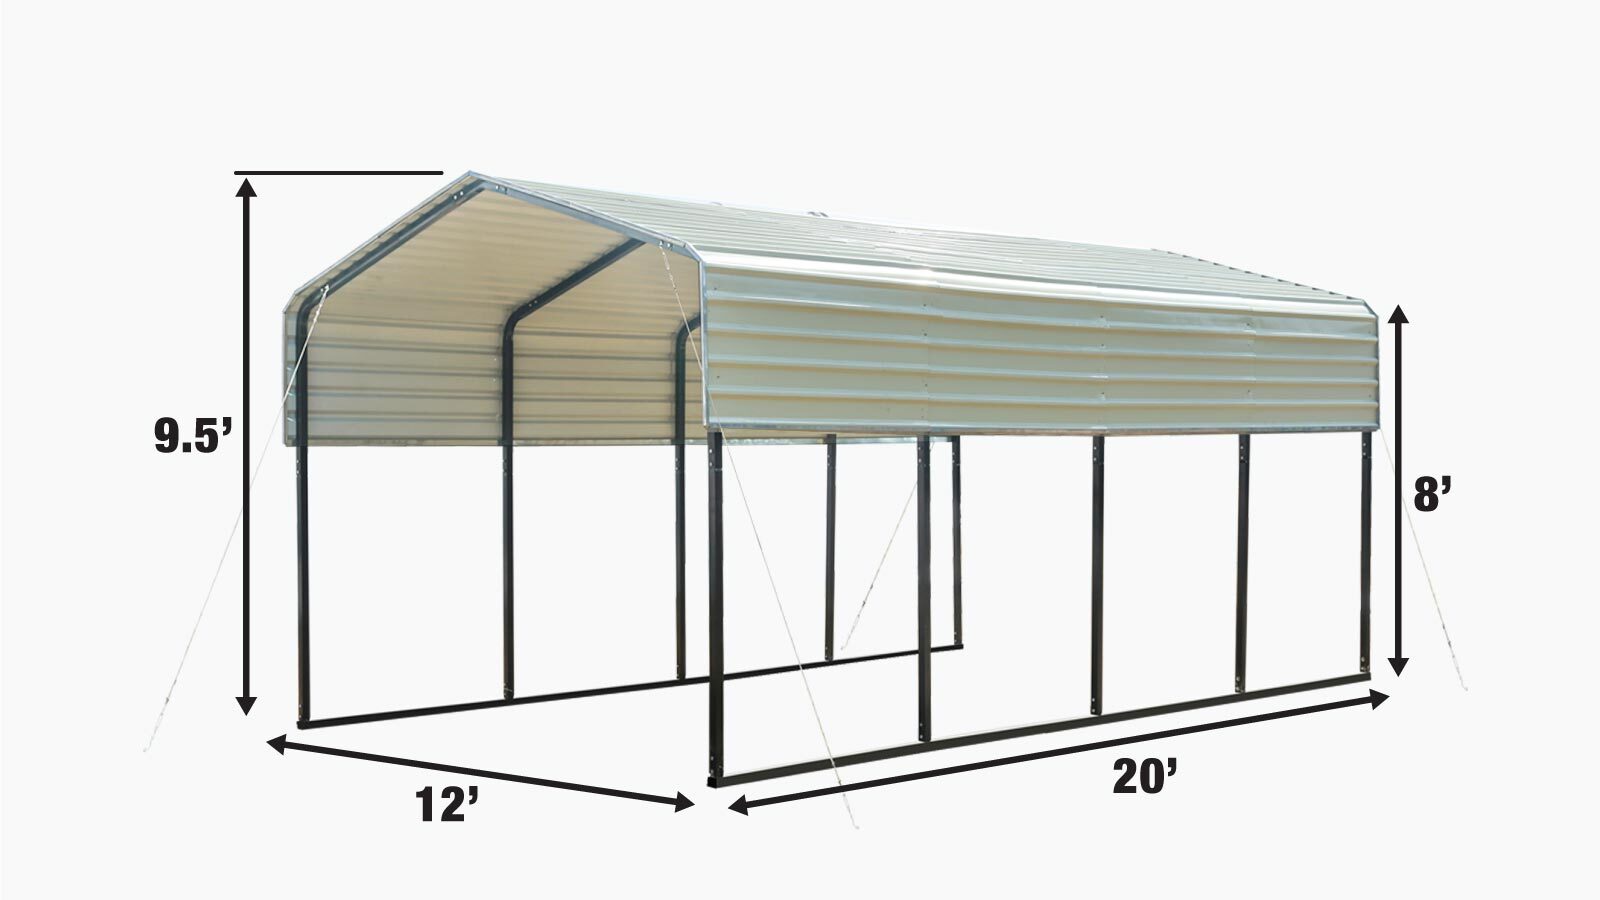 TMG Industrial 12' x 20' Carport tout en acier avec parois latérales ouvertes, toit galvanisé, revêtement en poudre, revêtement de peinture polyester, câbles de stabilisation, TMG-CP1220-specifications-image